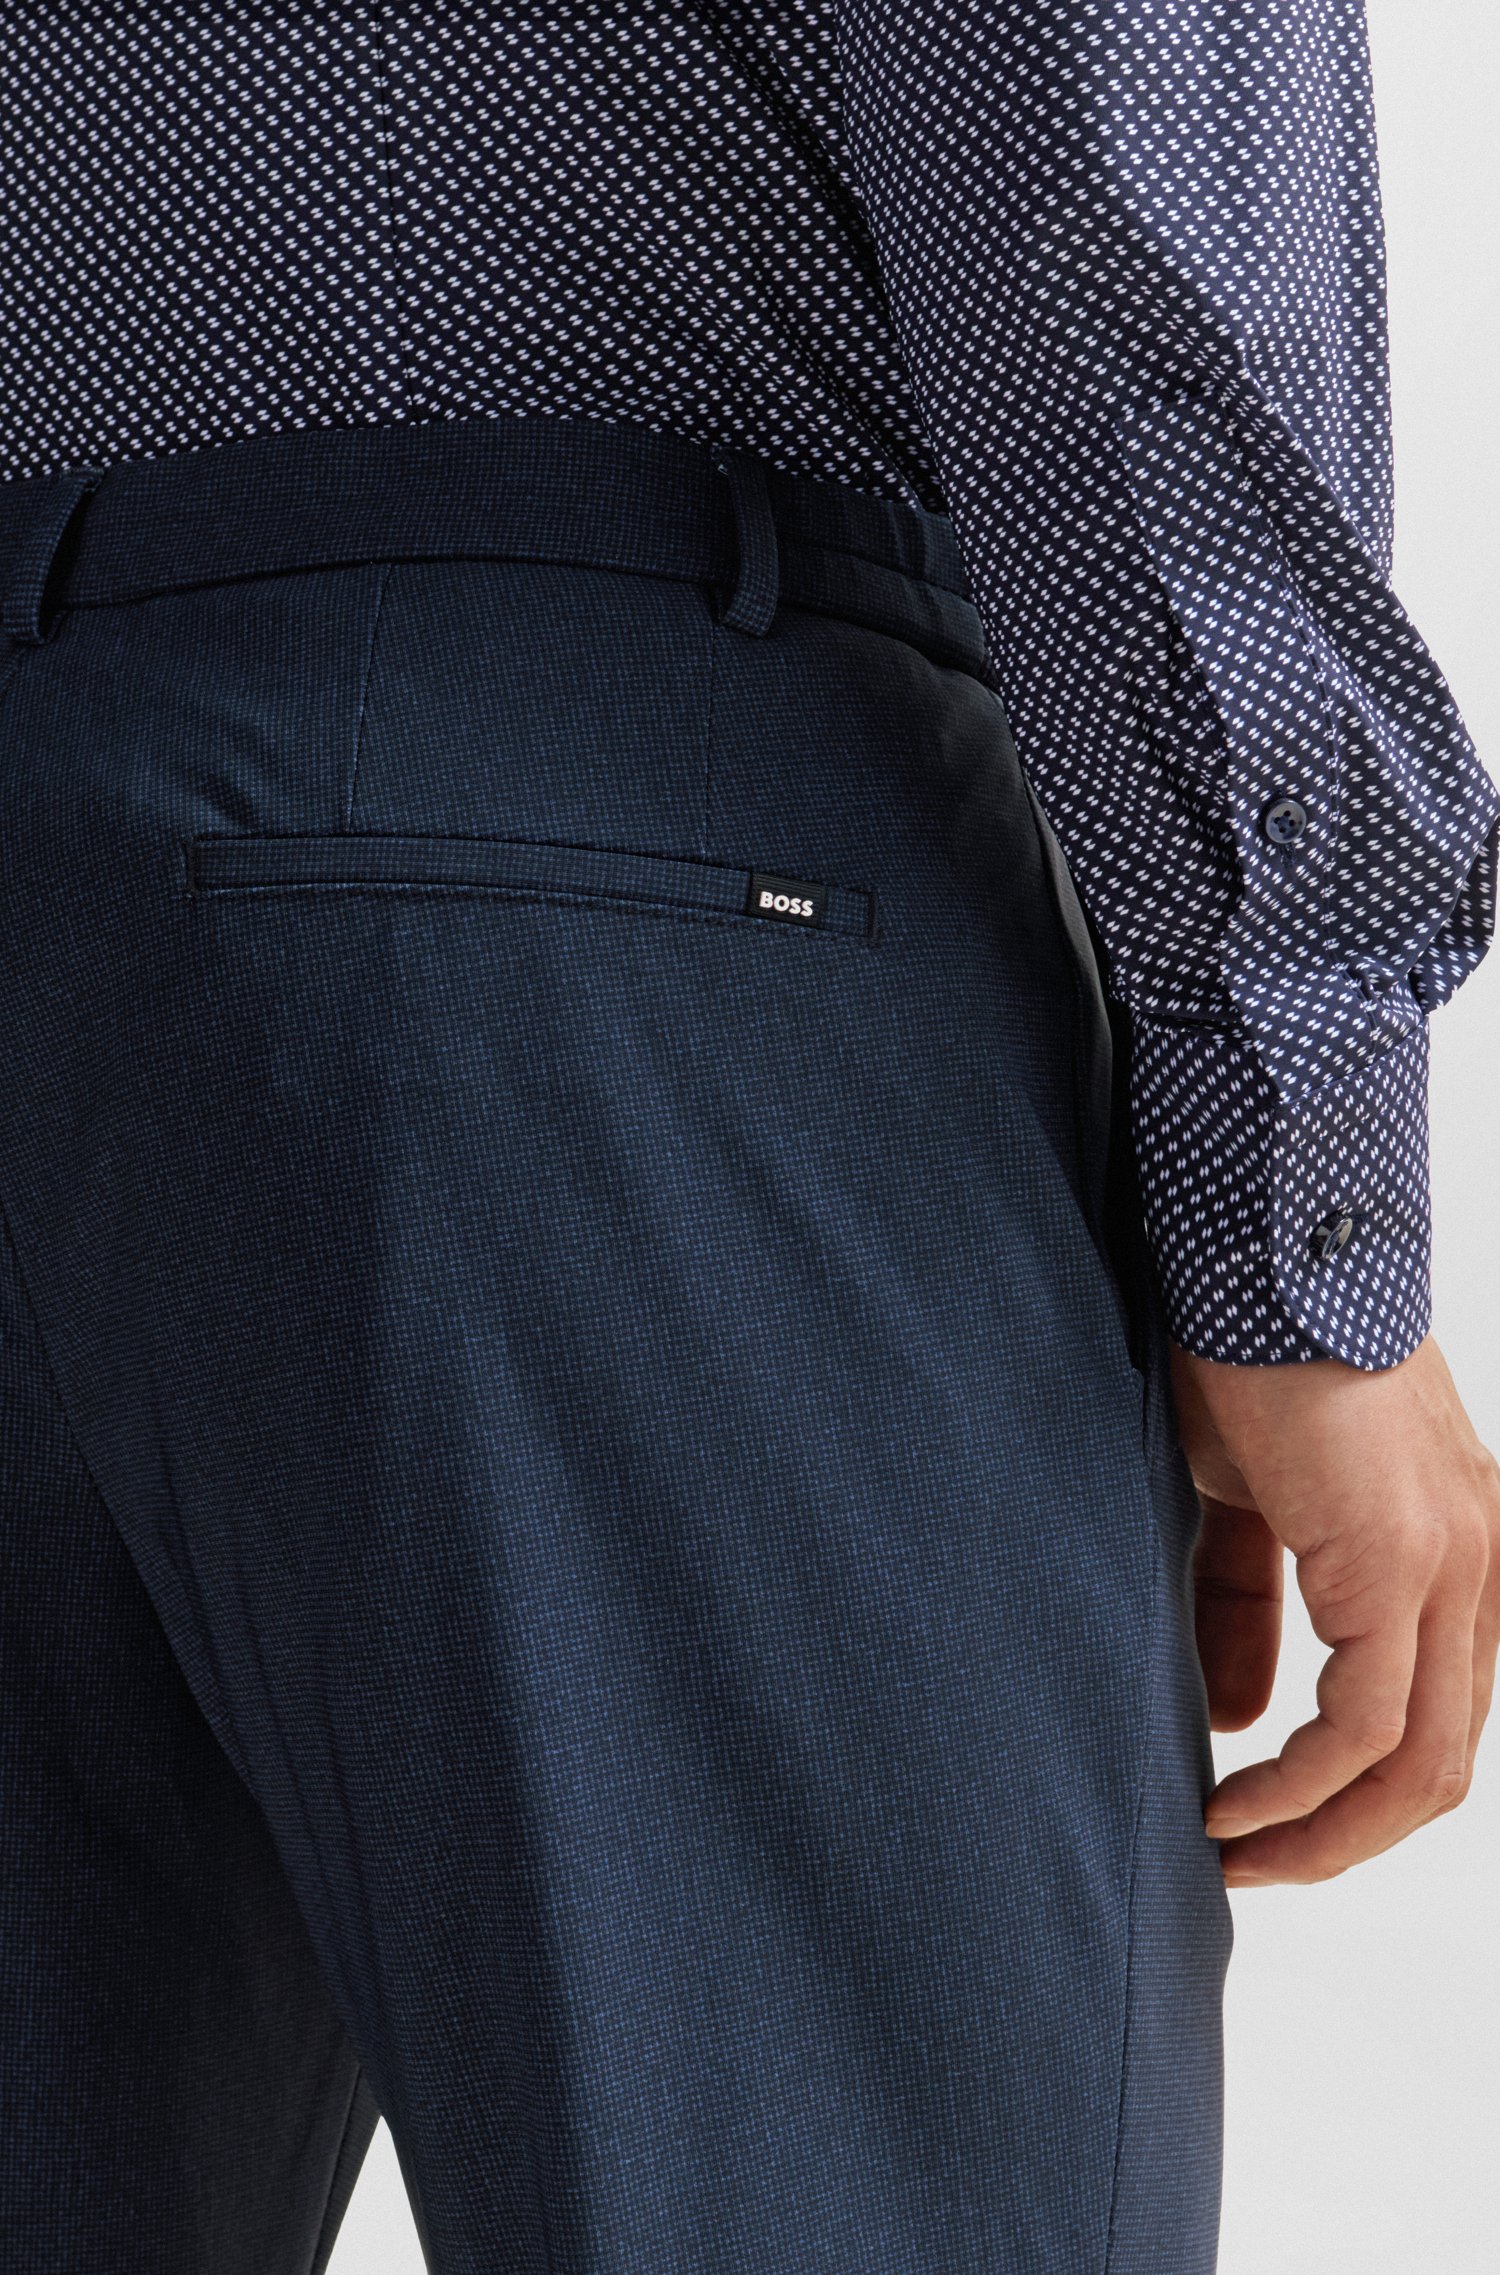 Pantalones slim fit de punto elástico técnico con microdibujo